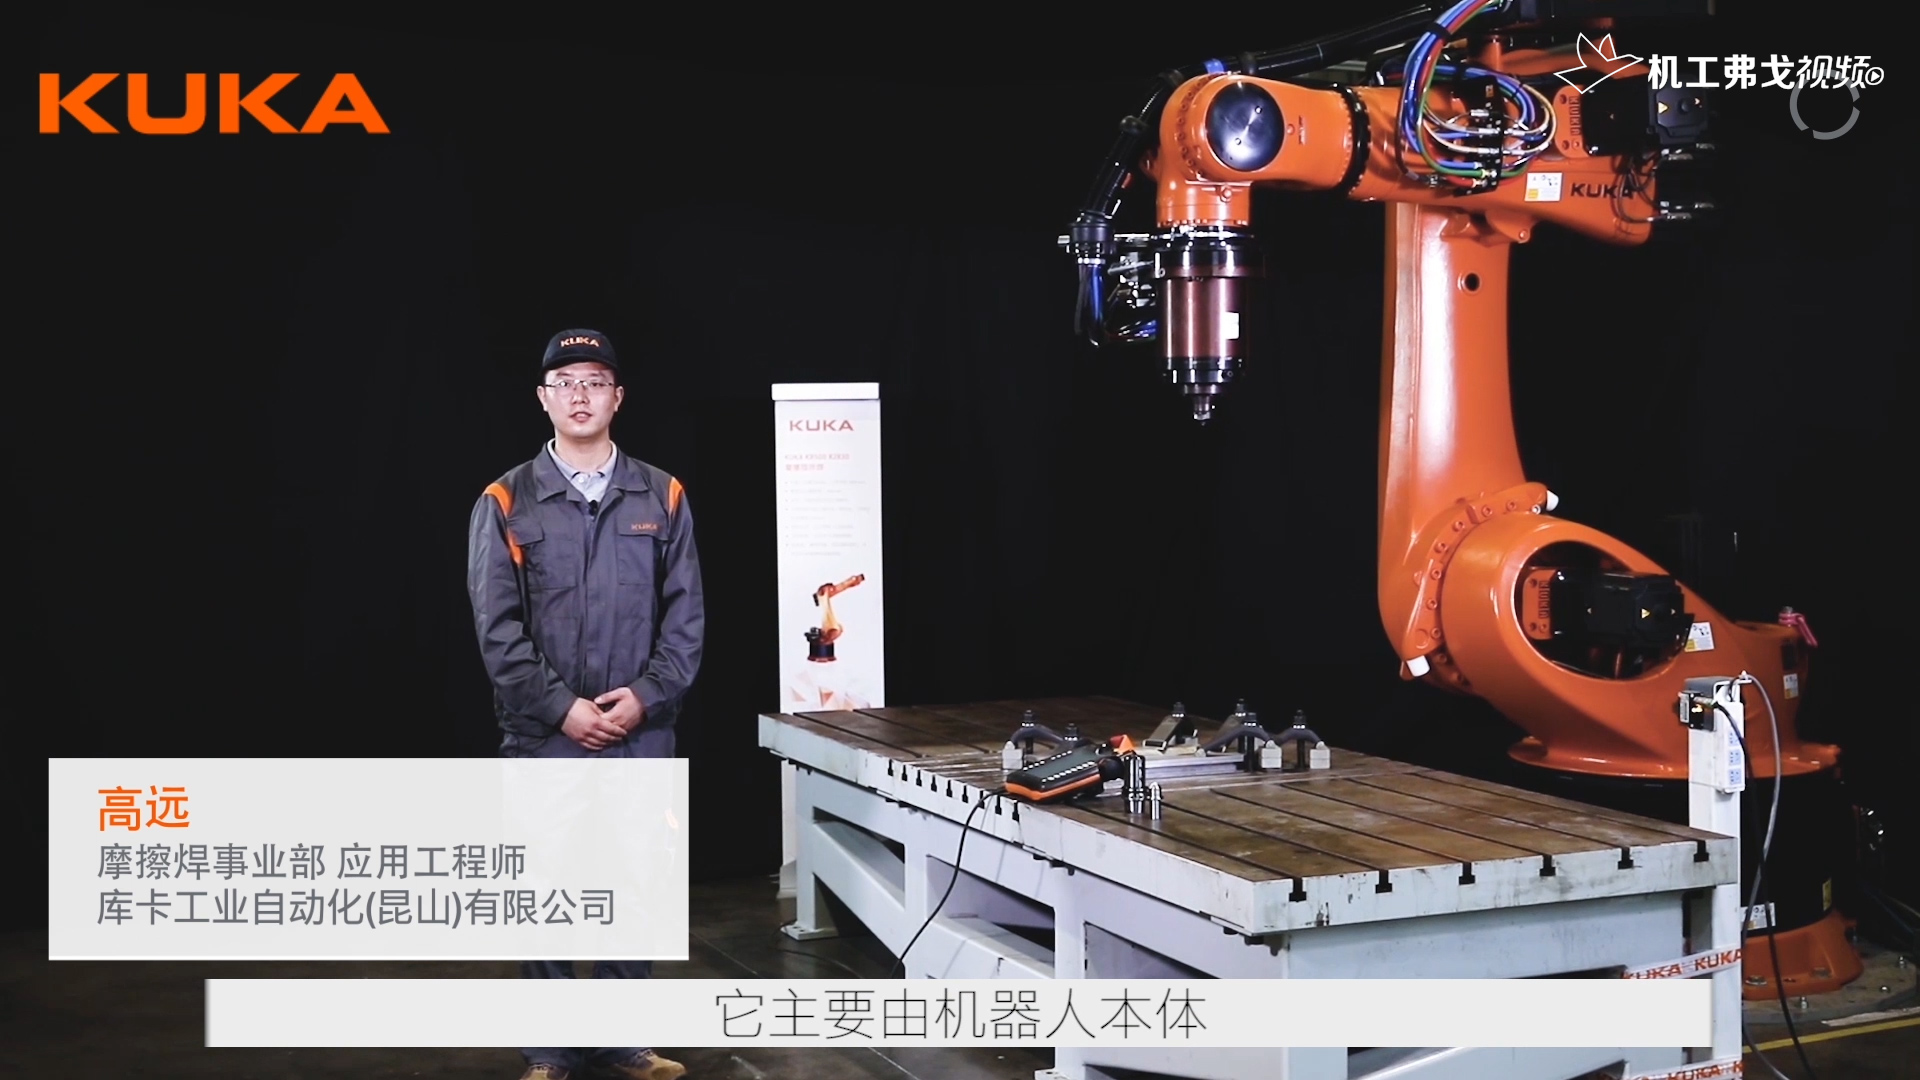 【产品介绍】库卡机器人搅拌摩擦焊介绍